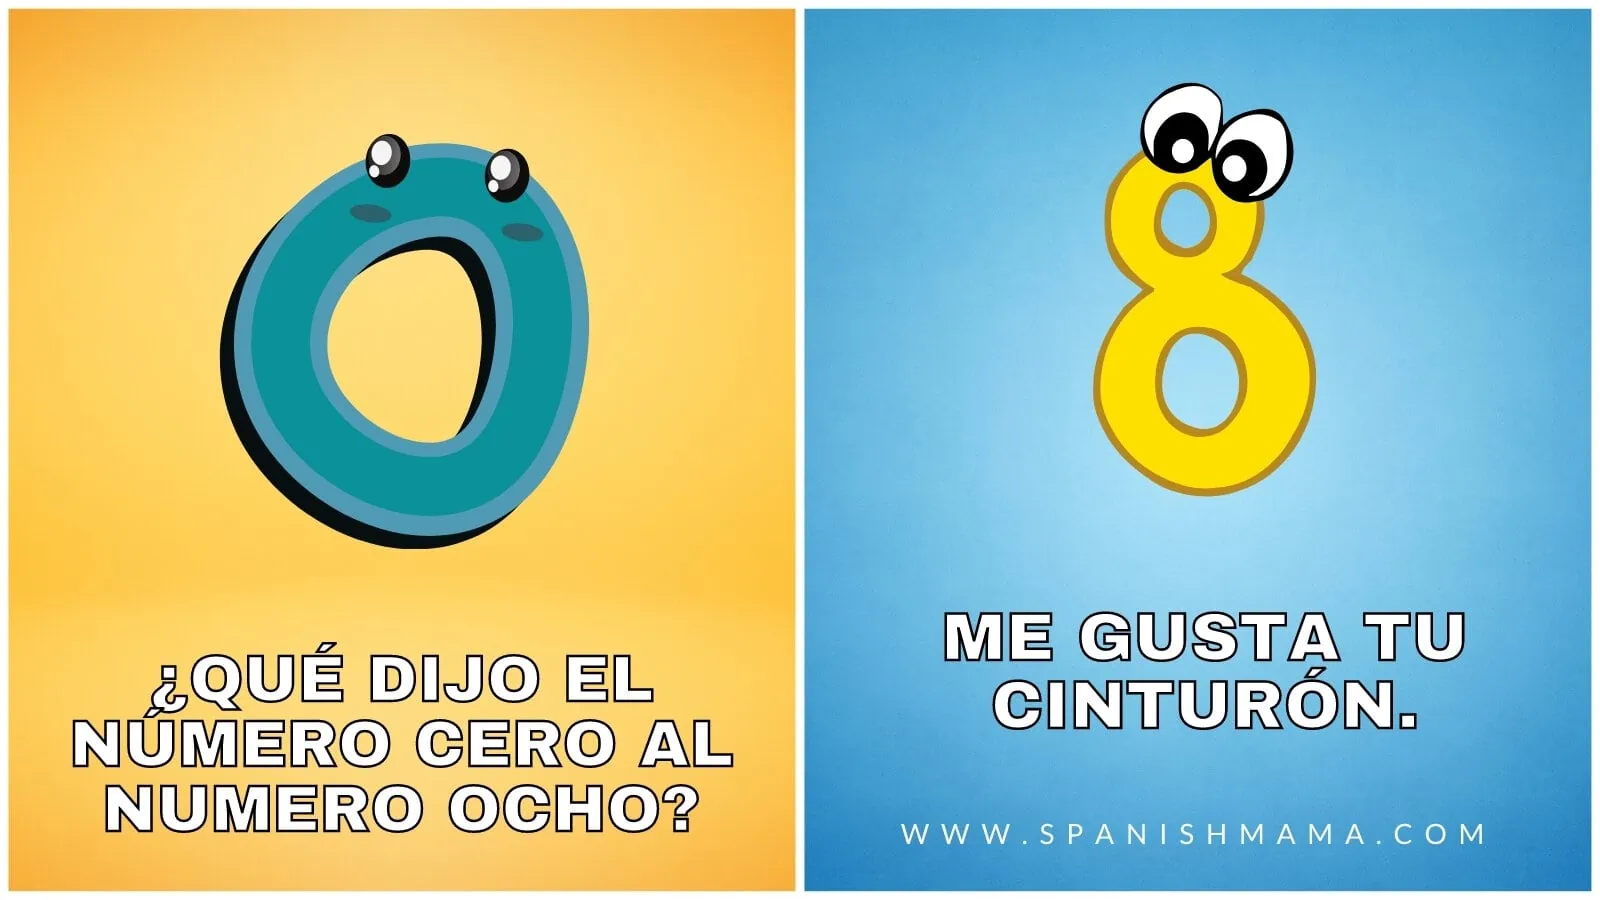 30 Hilarious Spanish Jokes for Kids That Will Have Them Ja-Ja-Ja-ing